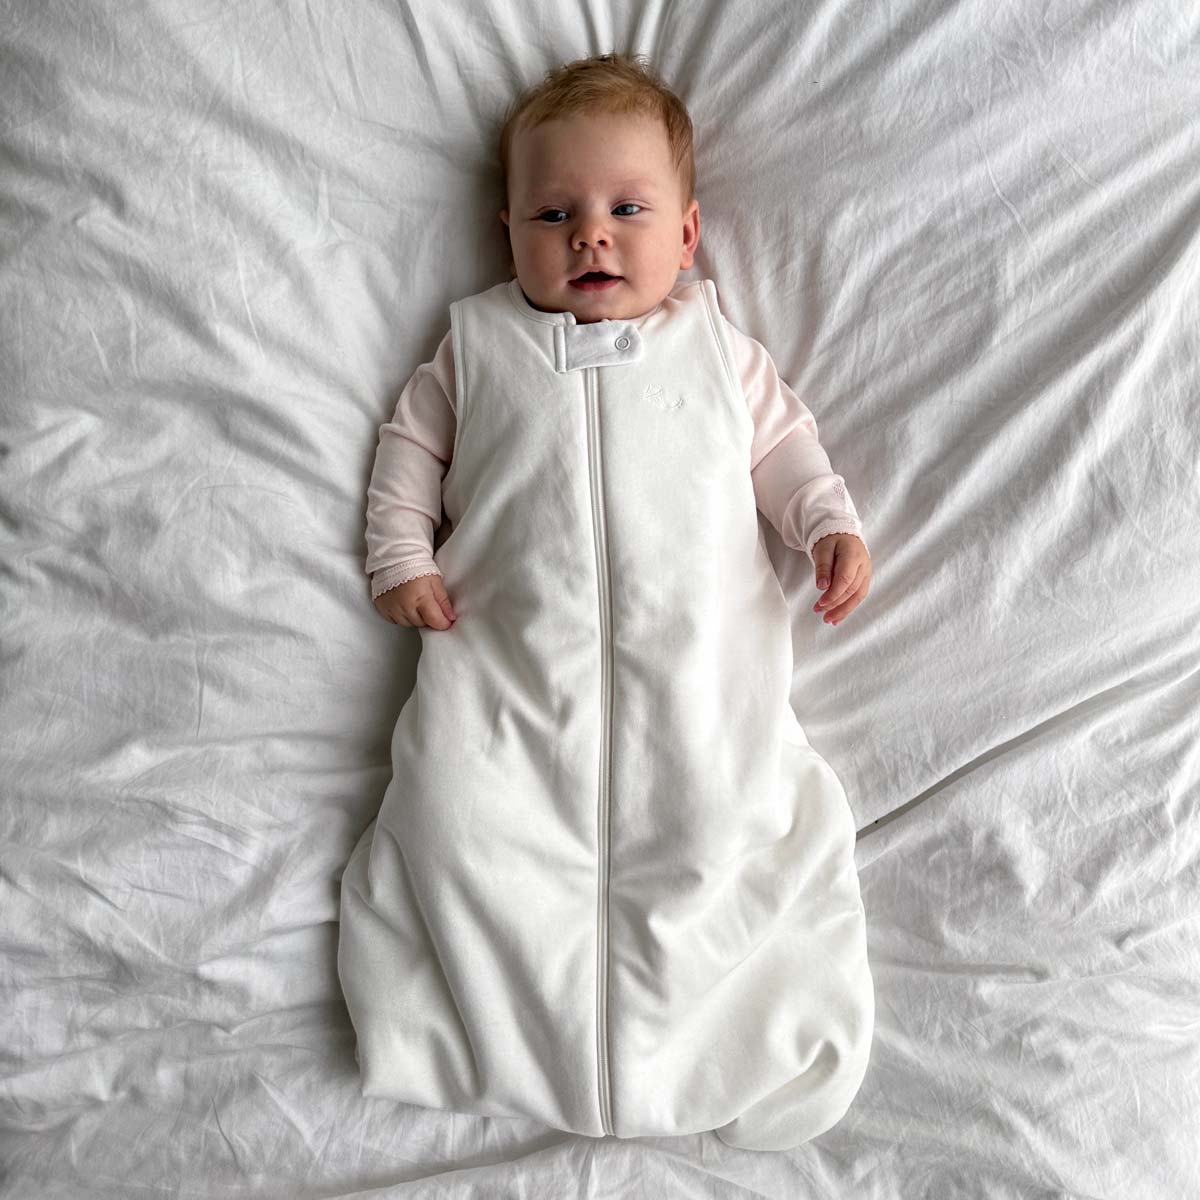 Bebis liggande på ett vitt täcke iklädd ekologisk sovpåse i krämvit bomull ovanpå rosa pyjamas eller sovpåse.